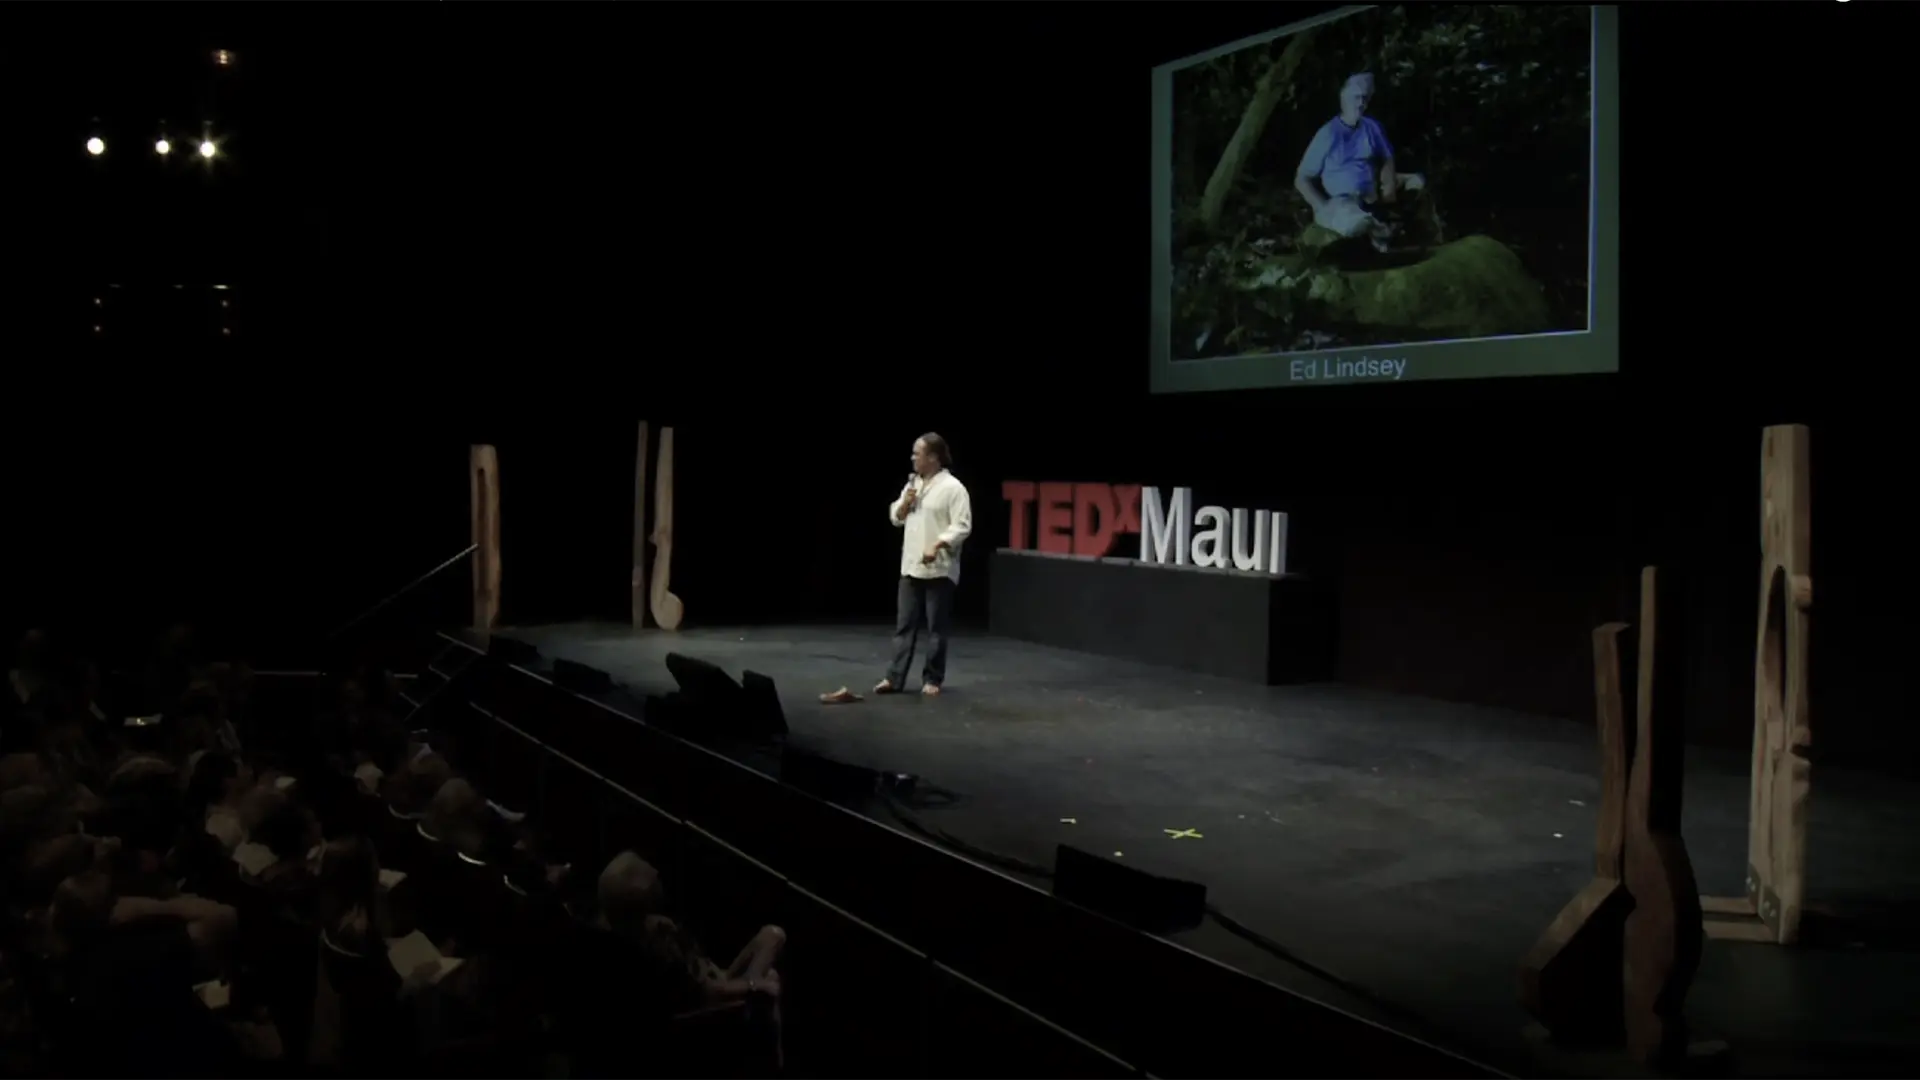 TEDxMaui - Edwin "Ekolu" Lindsey